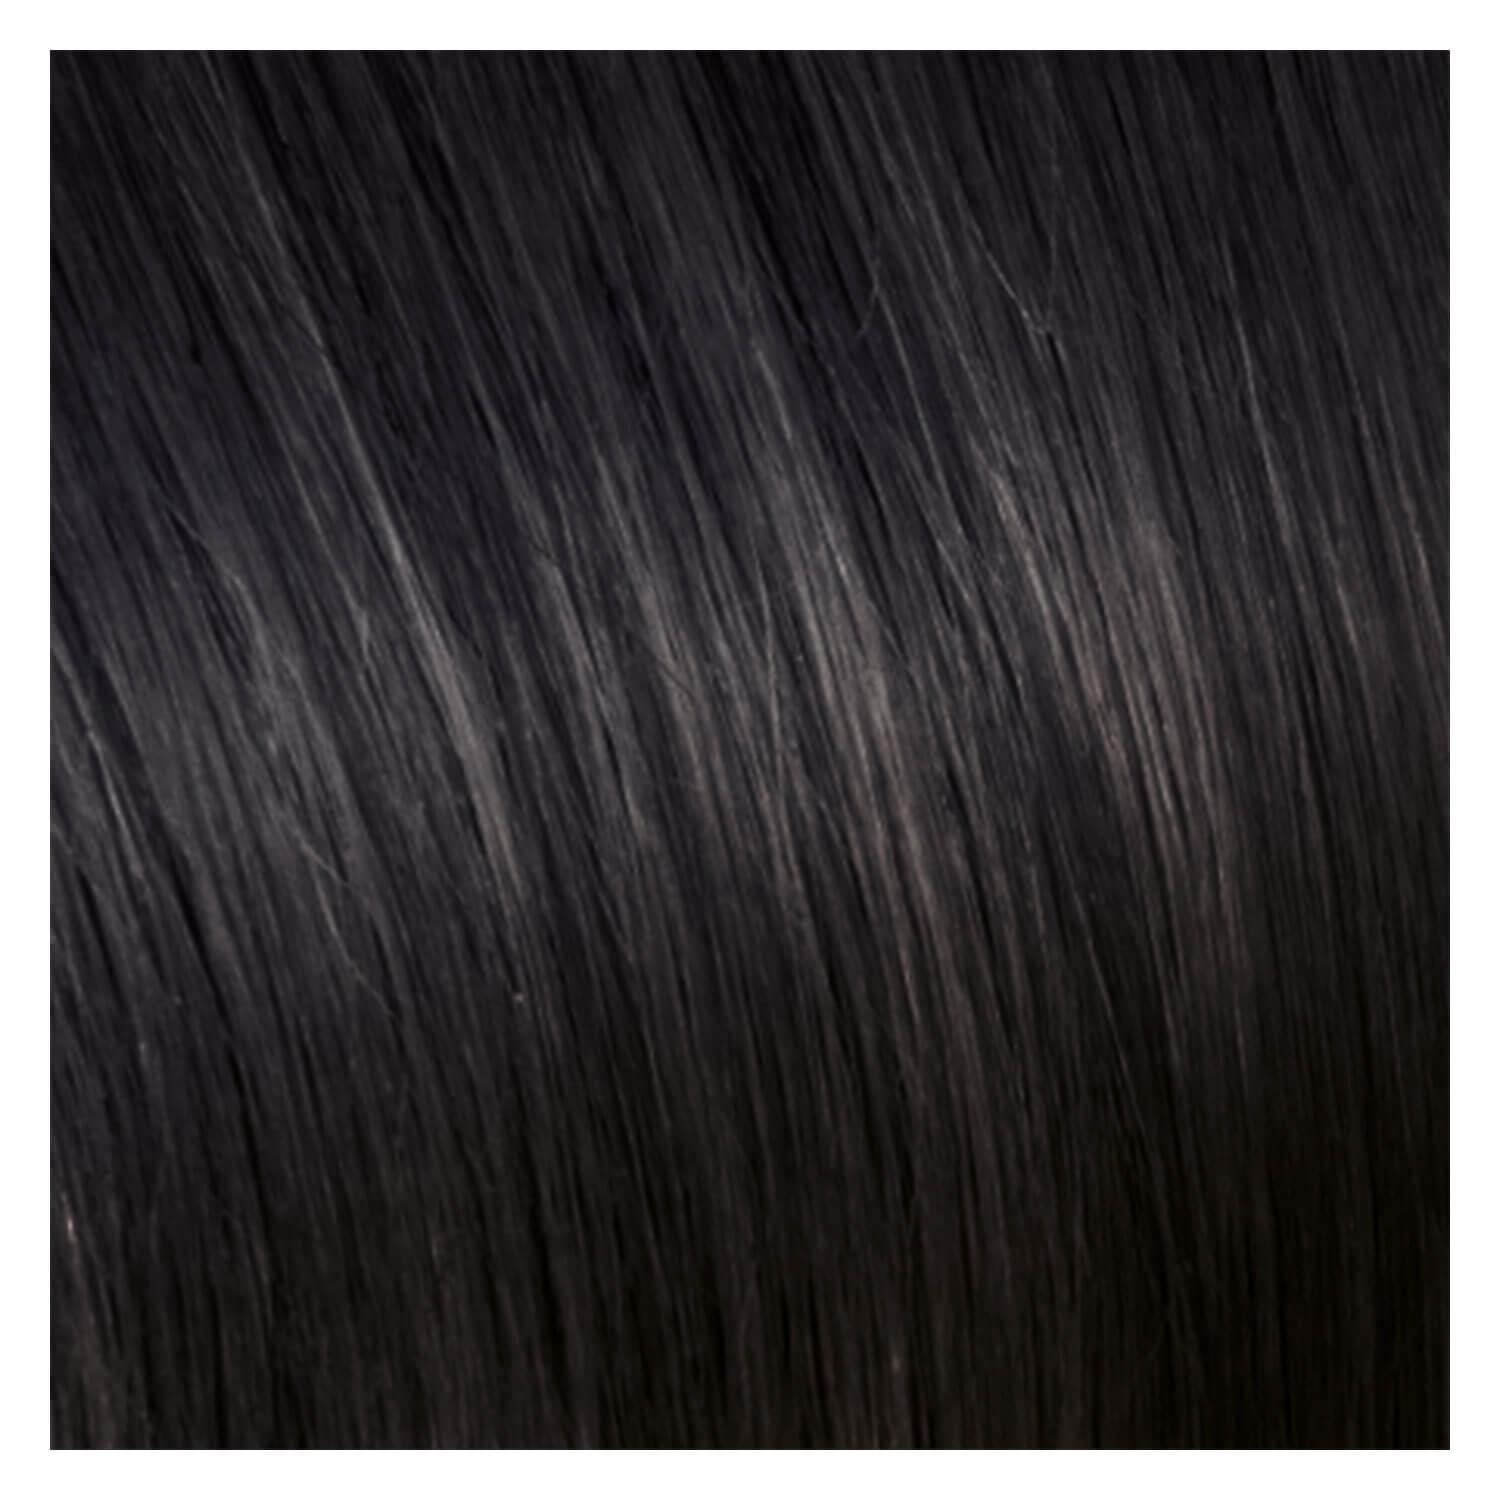 SHE Bonding-System Hair Extensions Straight - 1B Black 55/60cm